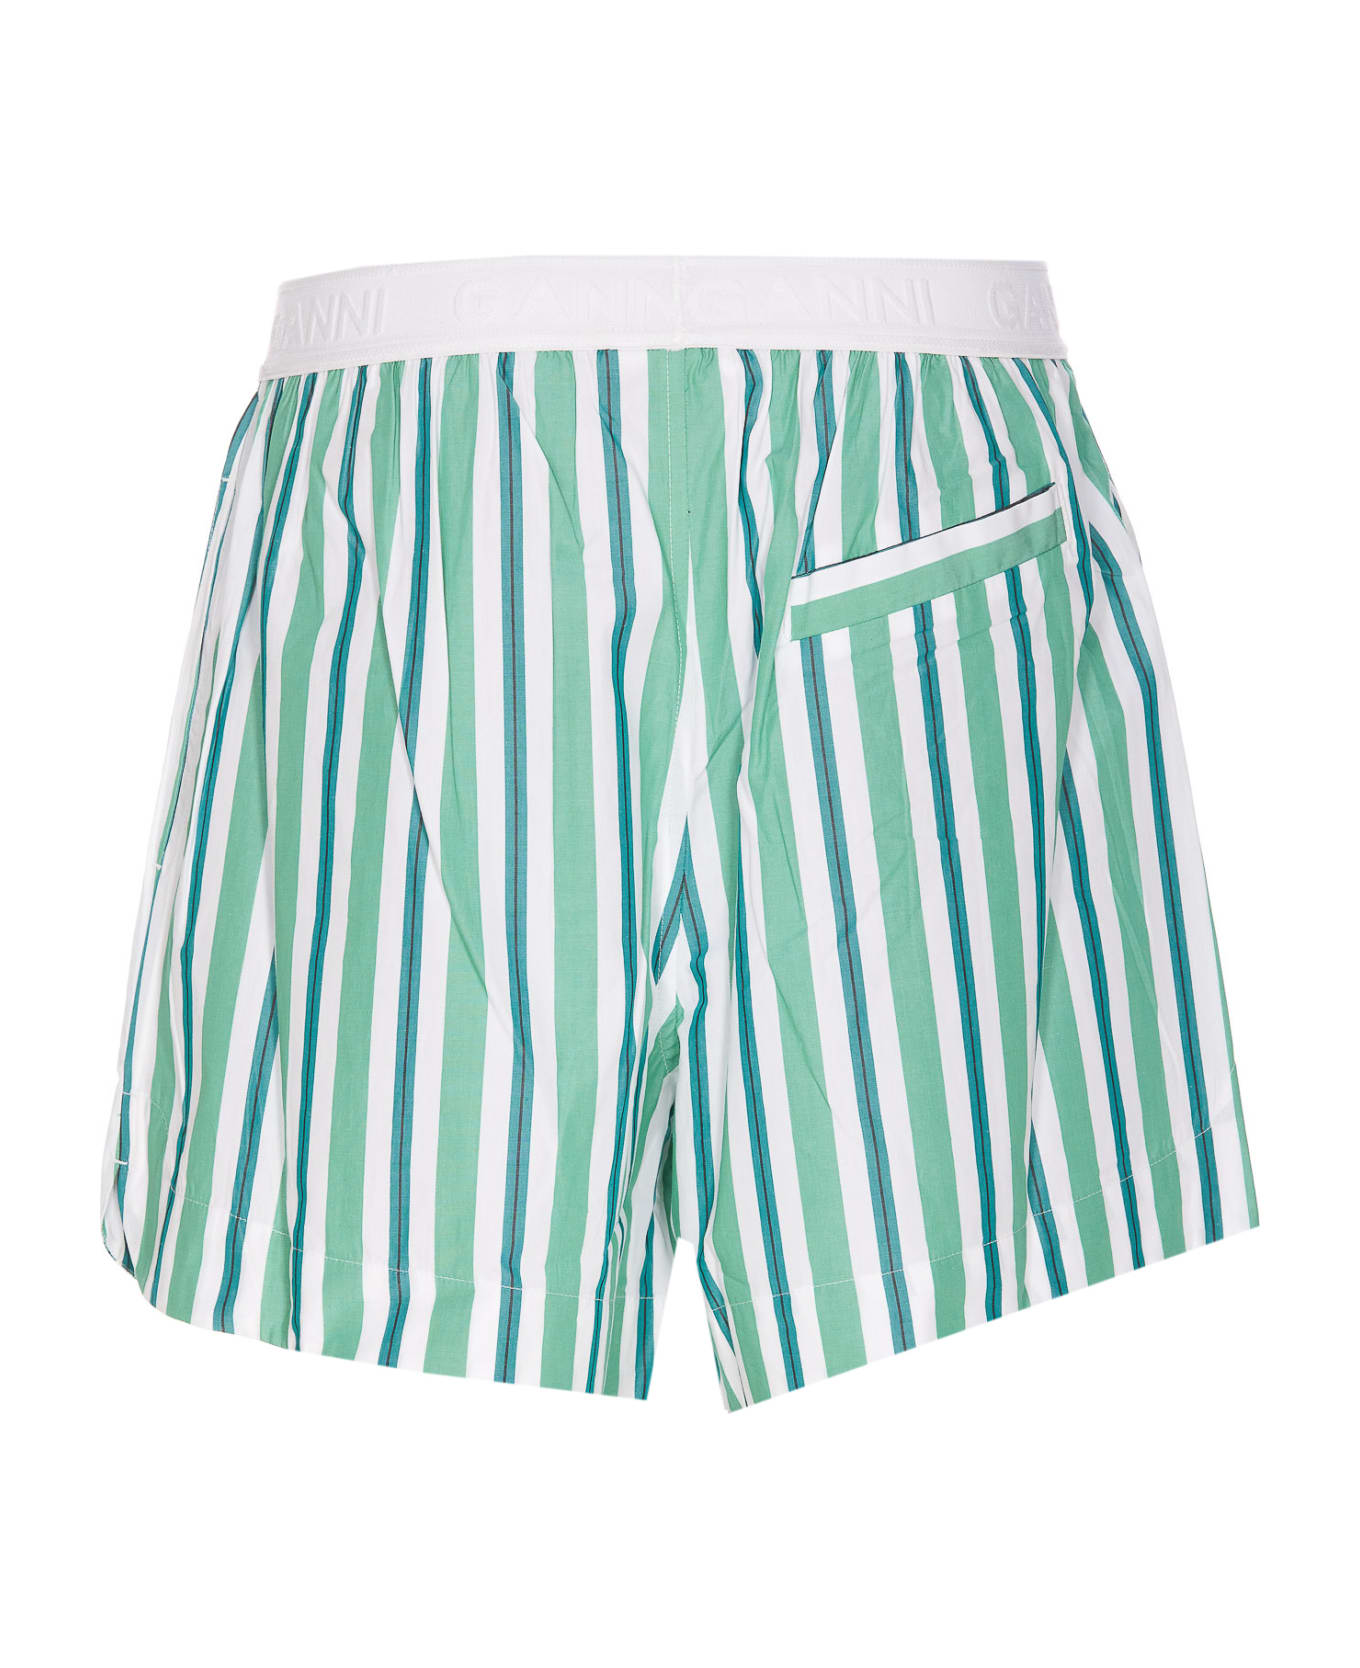 Ganni Striped Shorts - Verde ショートパンツ